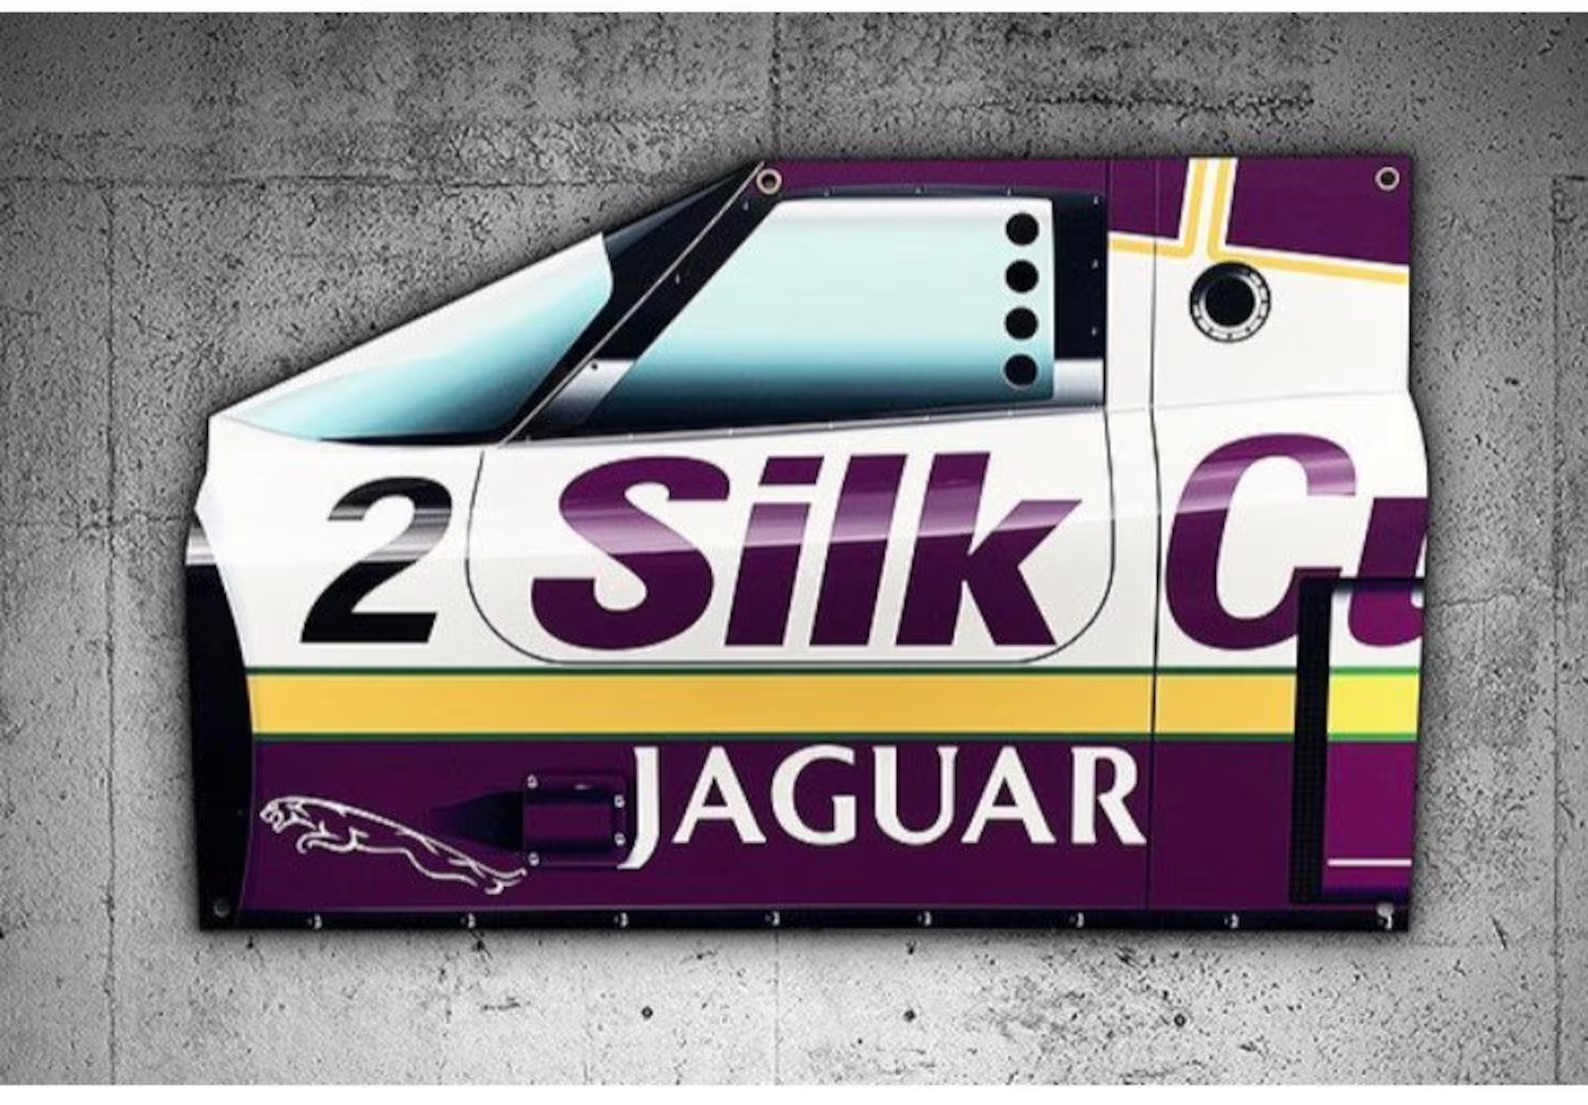 Jaguar XJR9 Wall Display